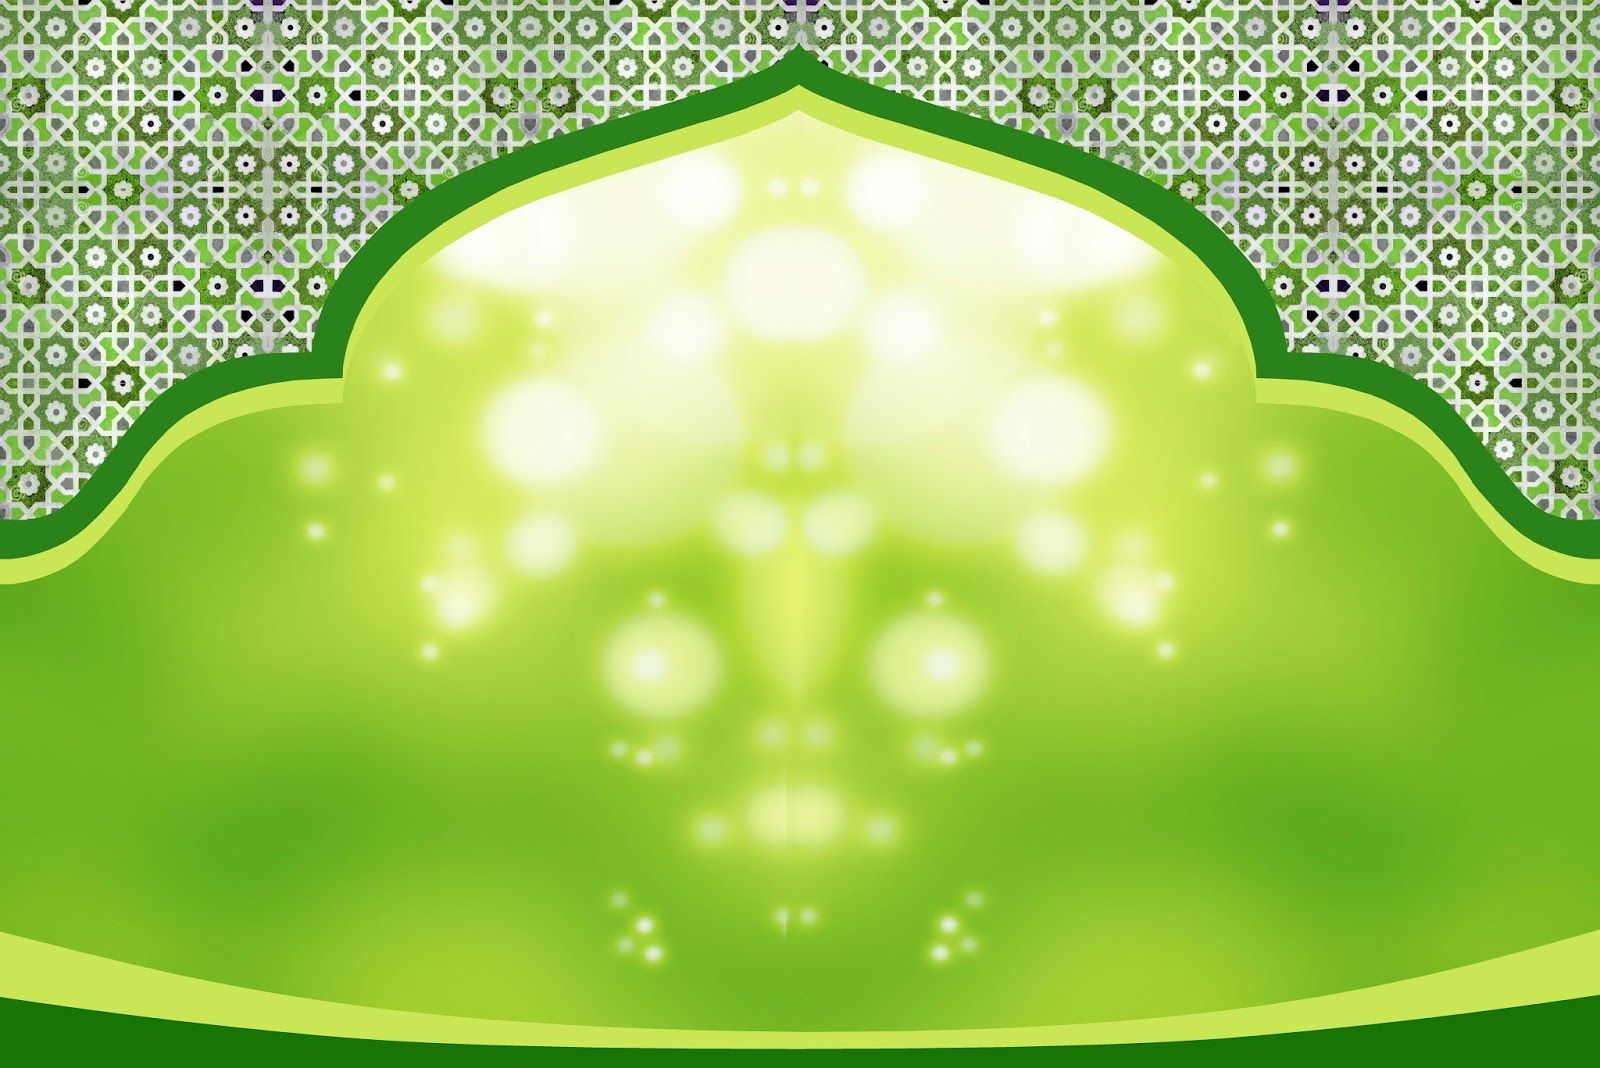 Islamic Background Hijau - KibrisPDR